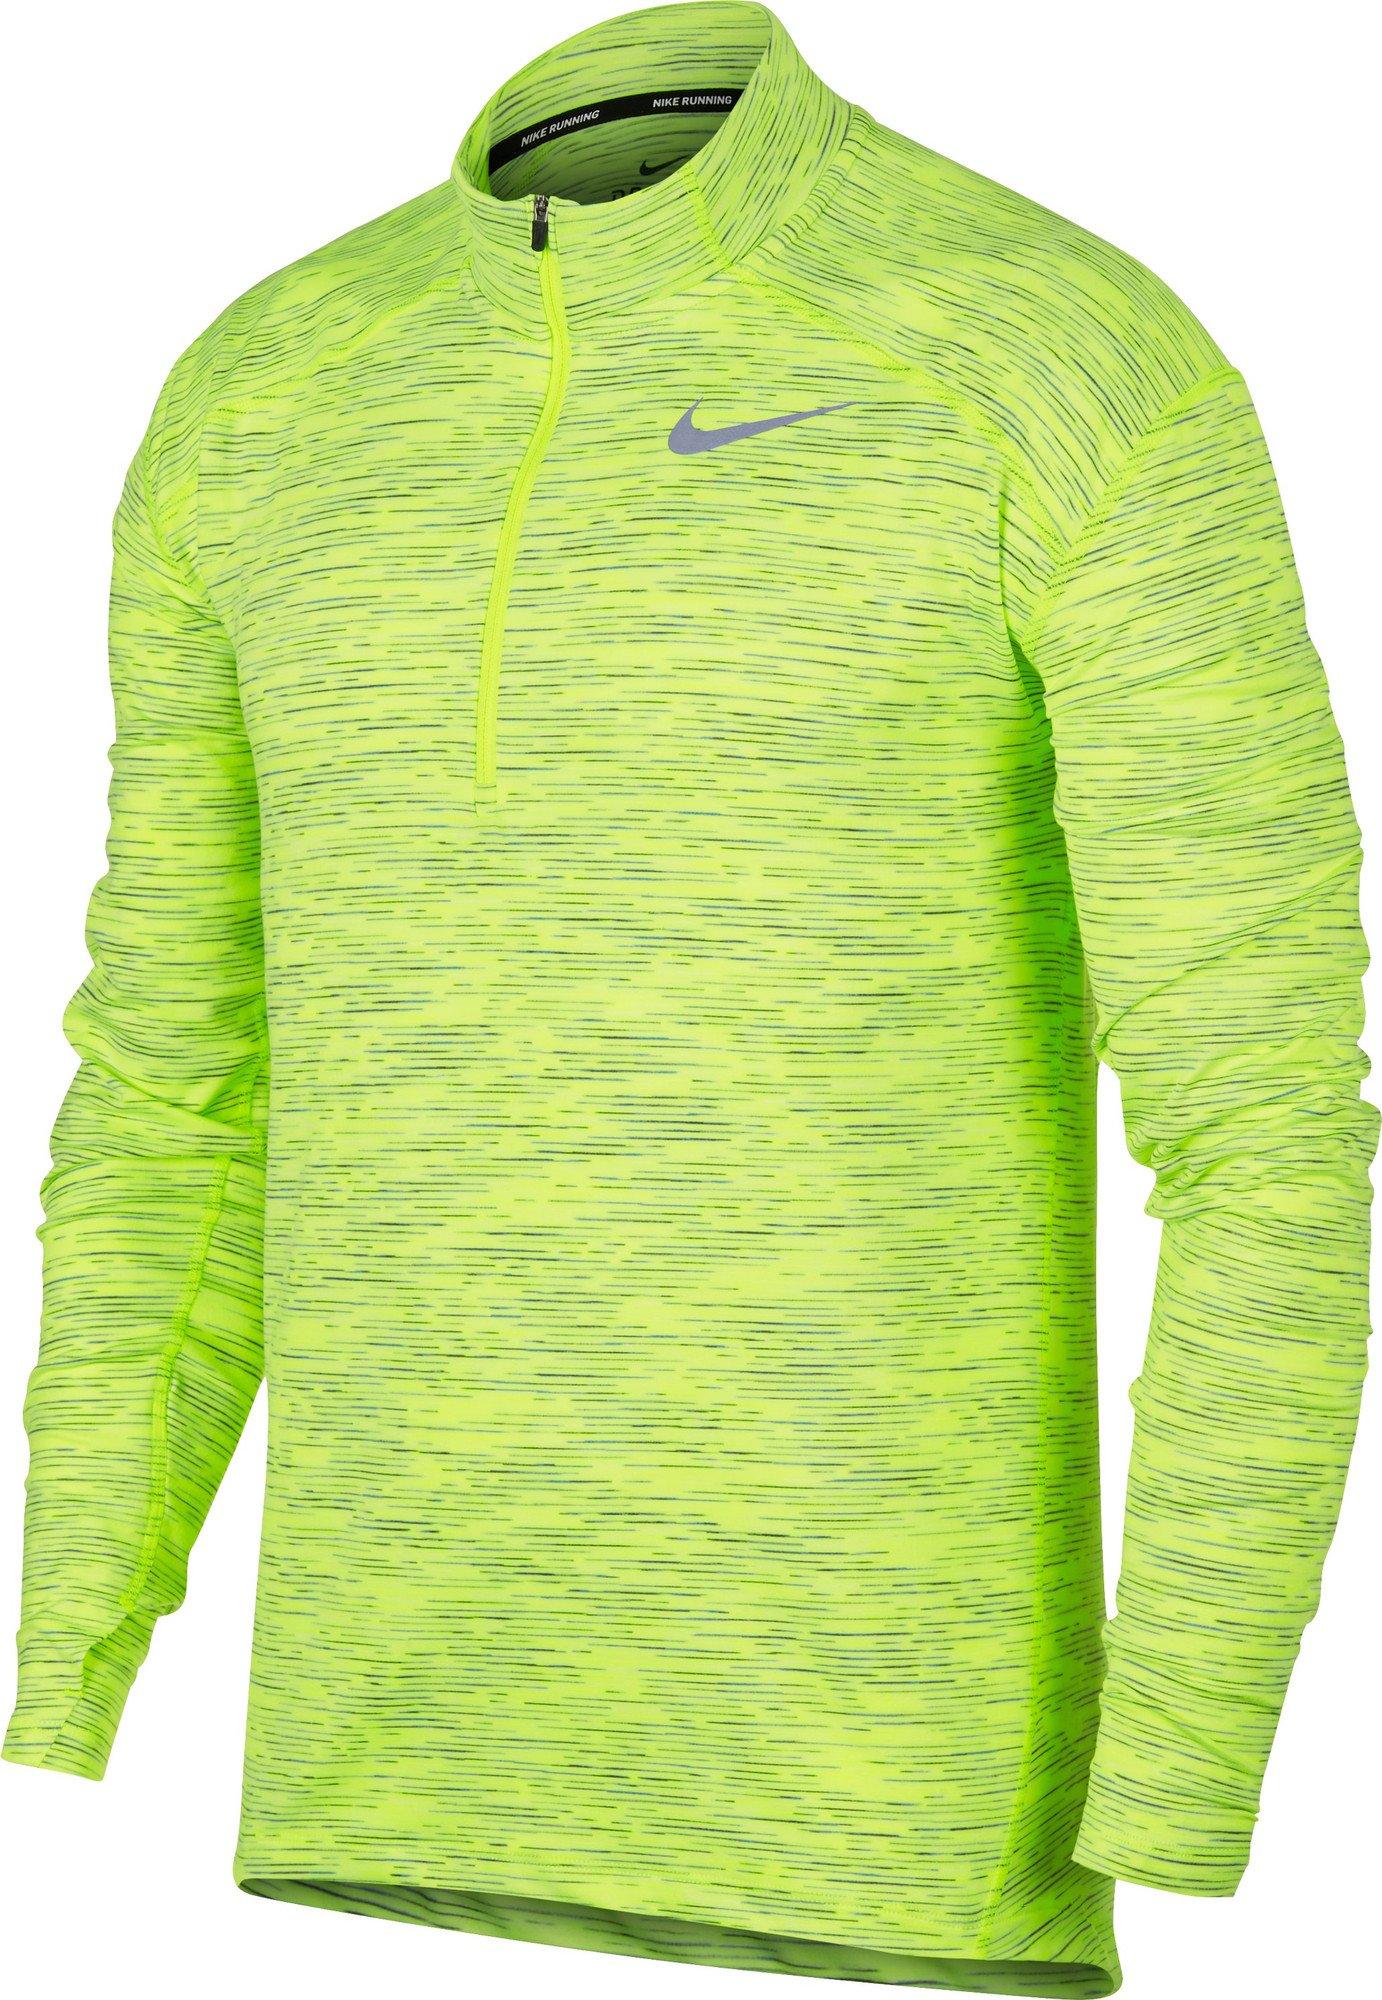 Pánské běžecké tričko s dlouhým rukávem Nike Dry Element Radiant